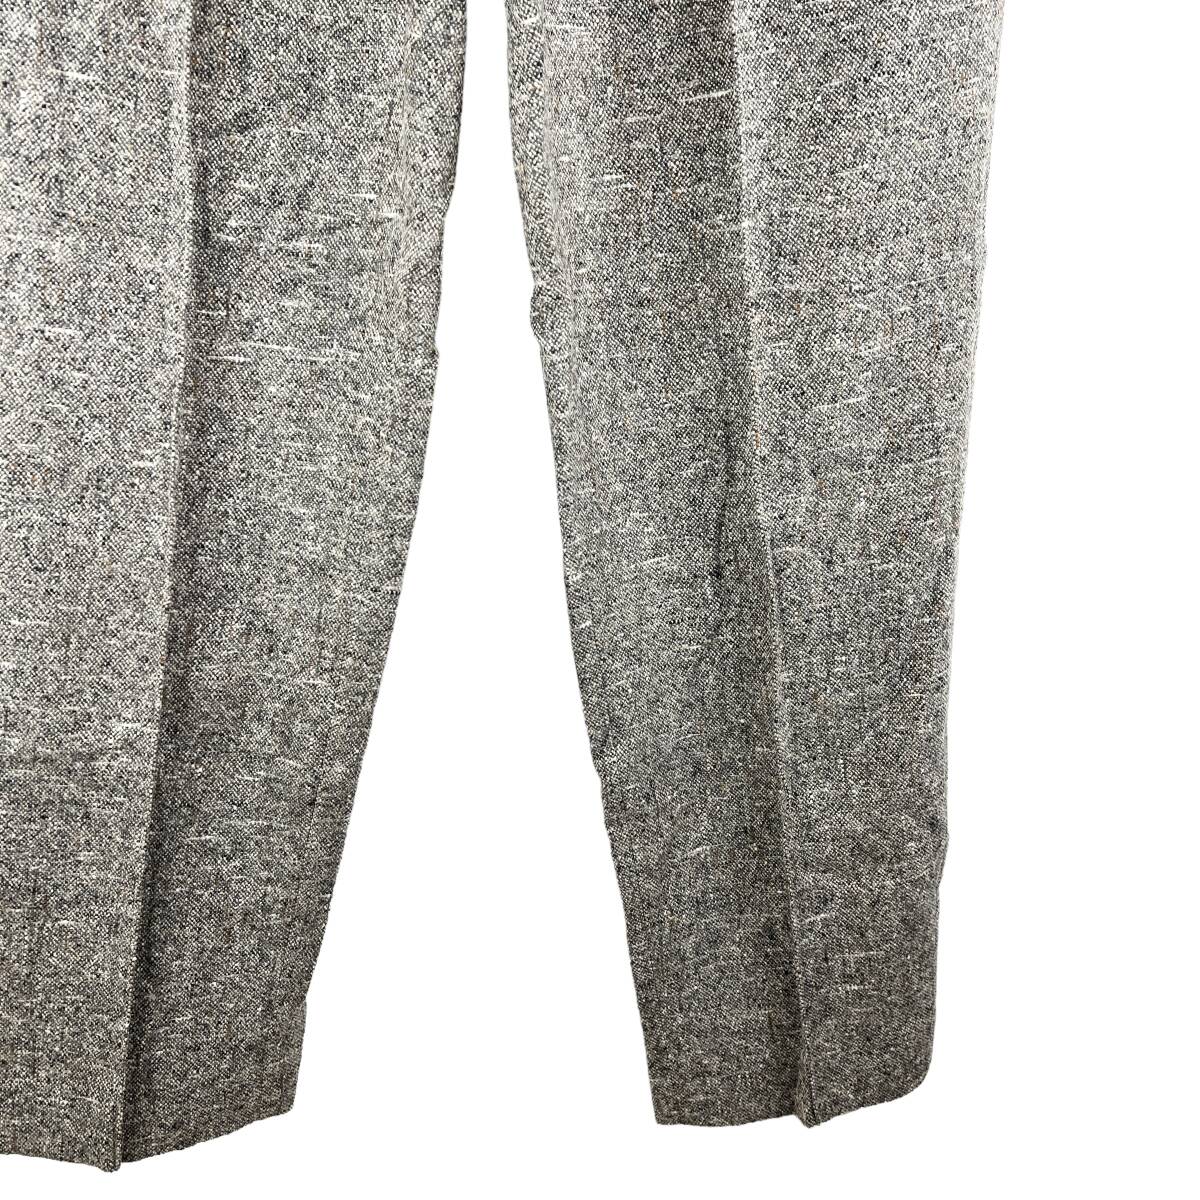 Dries Van Noten(ドリス ヴァン ノッテン) Casual Business Wool Cashmere Slacks Pants (brown)_画像4